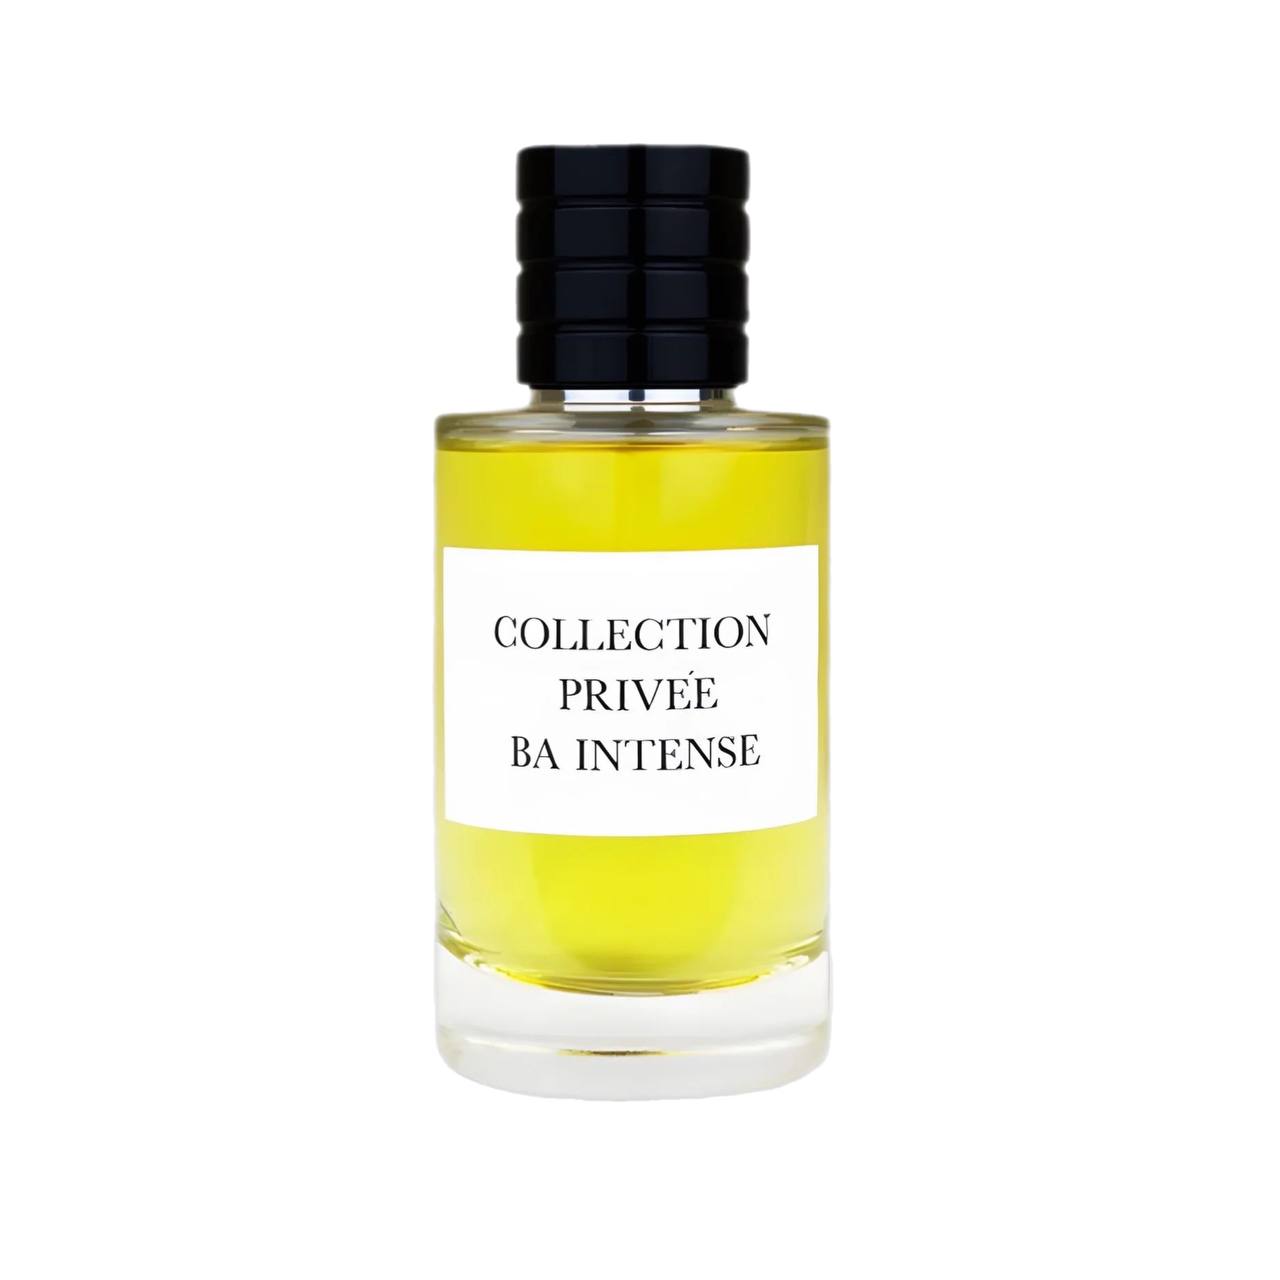 BA Intense - Collection Privée 100 ml